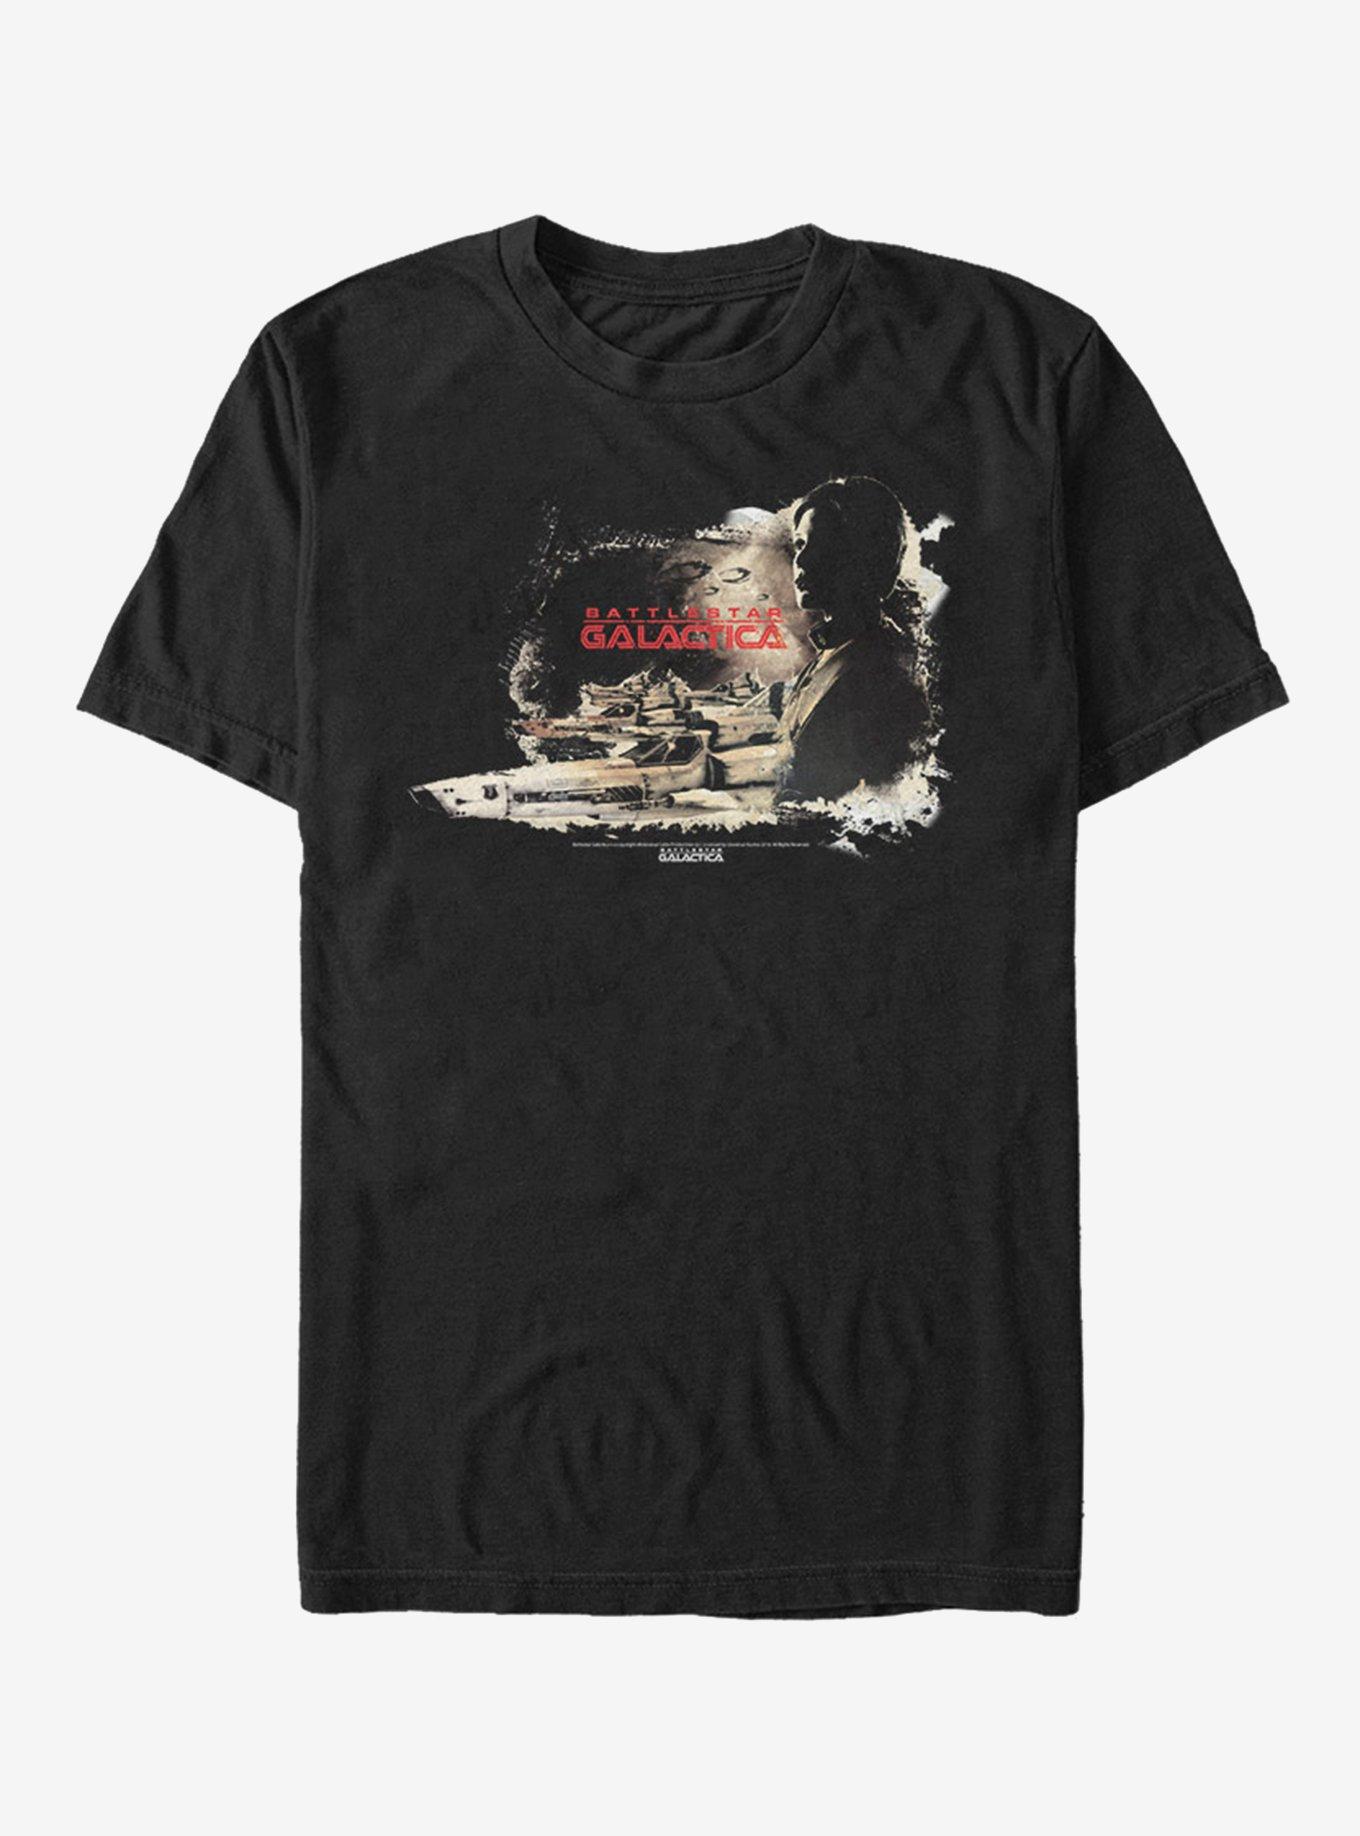 Battlestar Galactica Poster T-Shirt